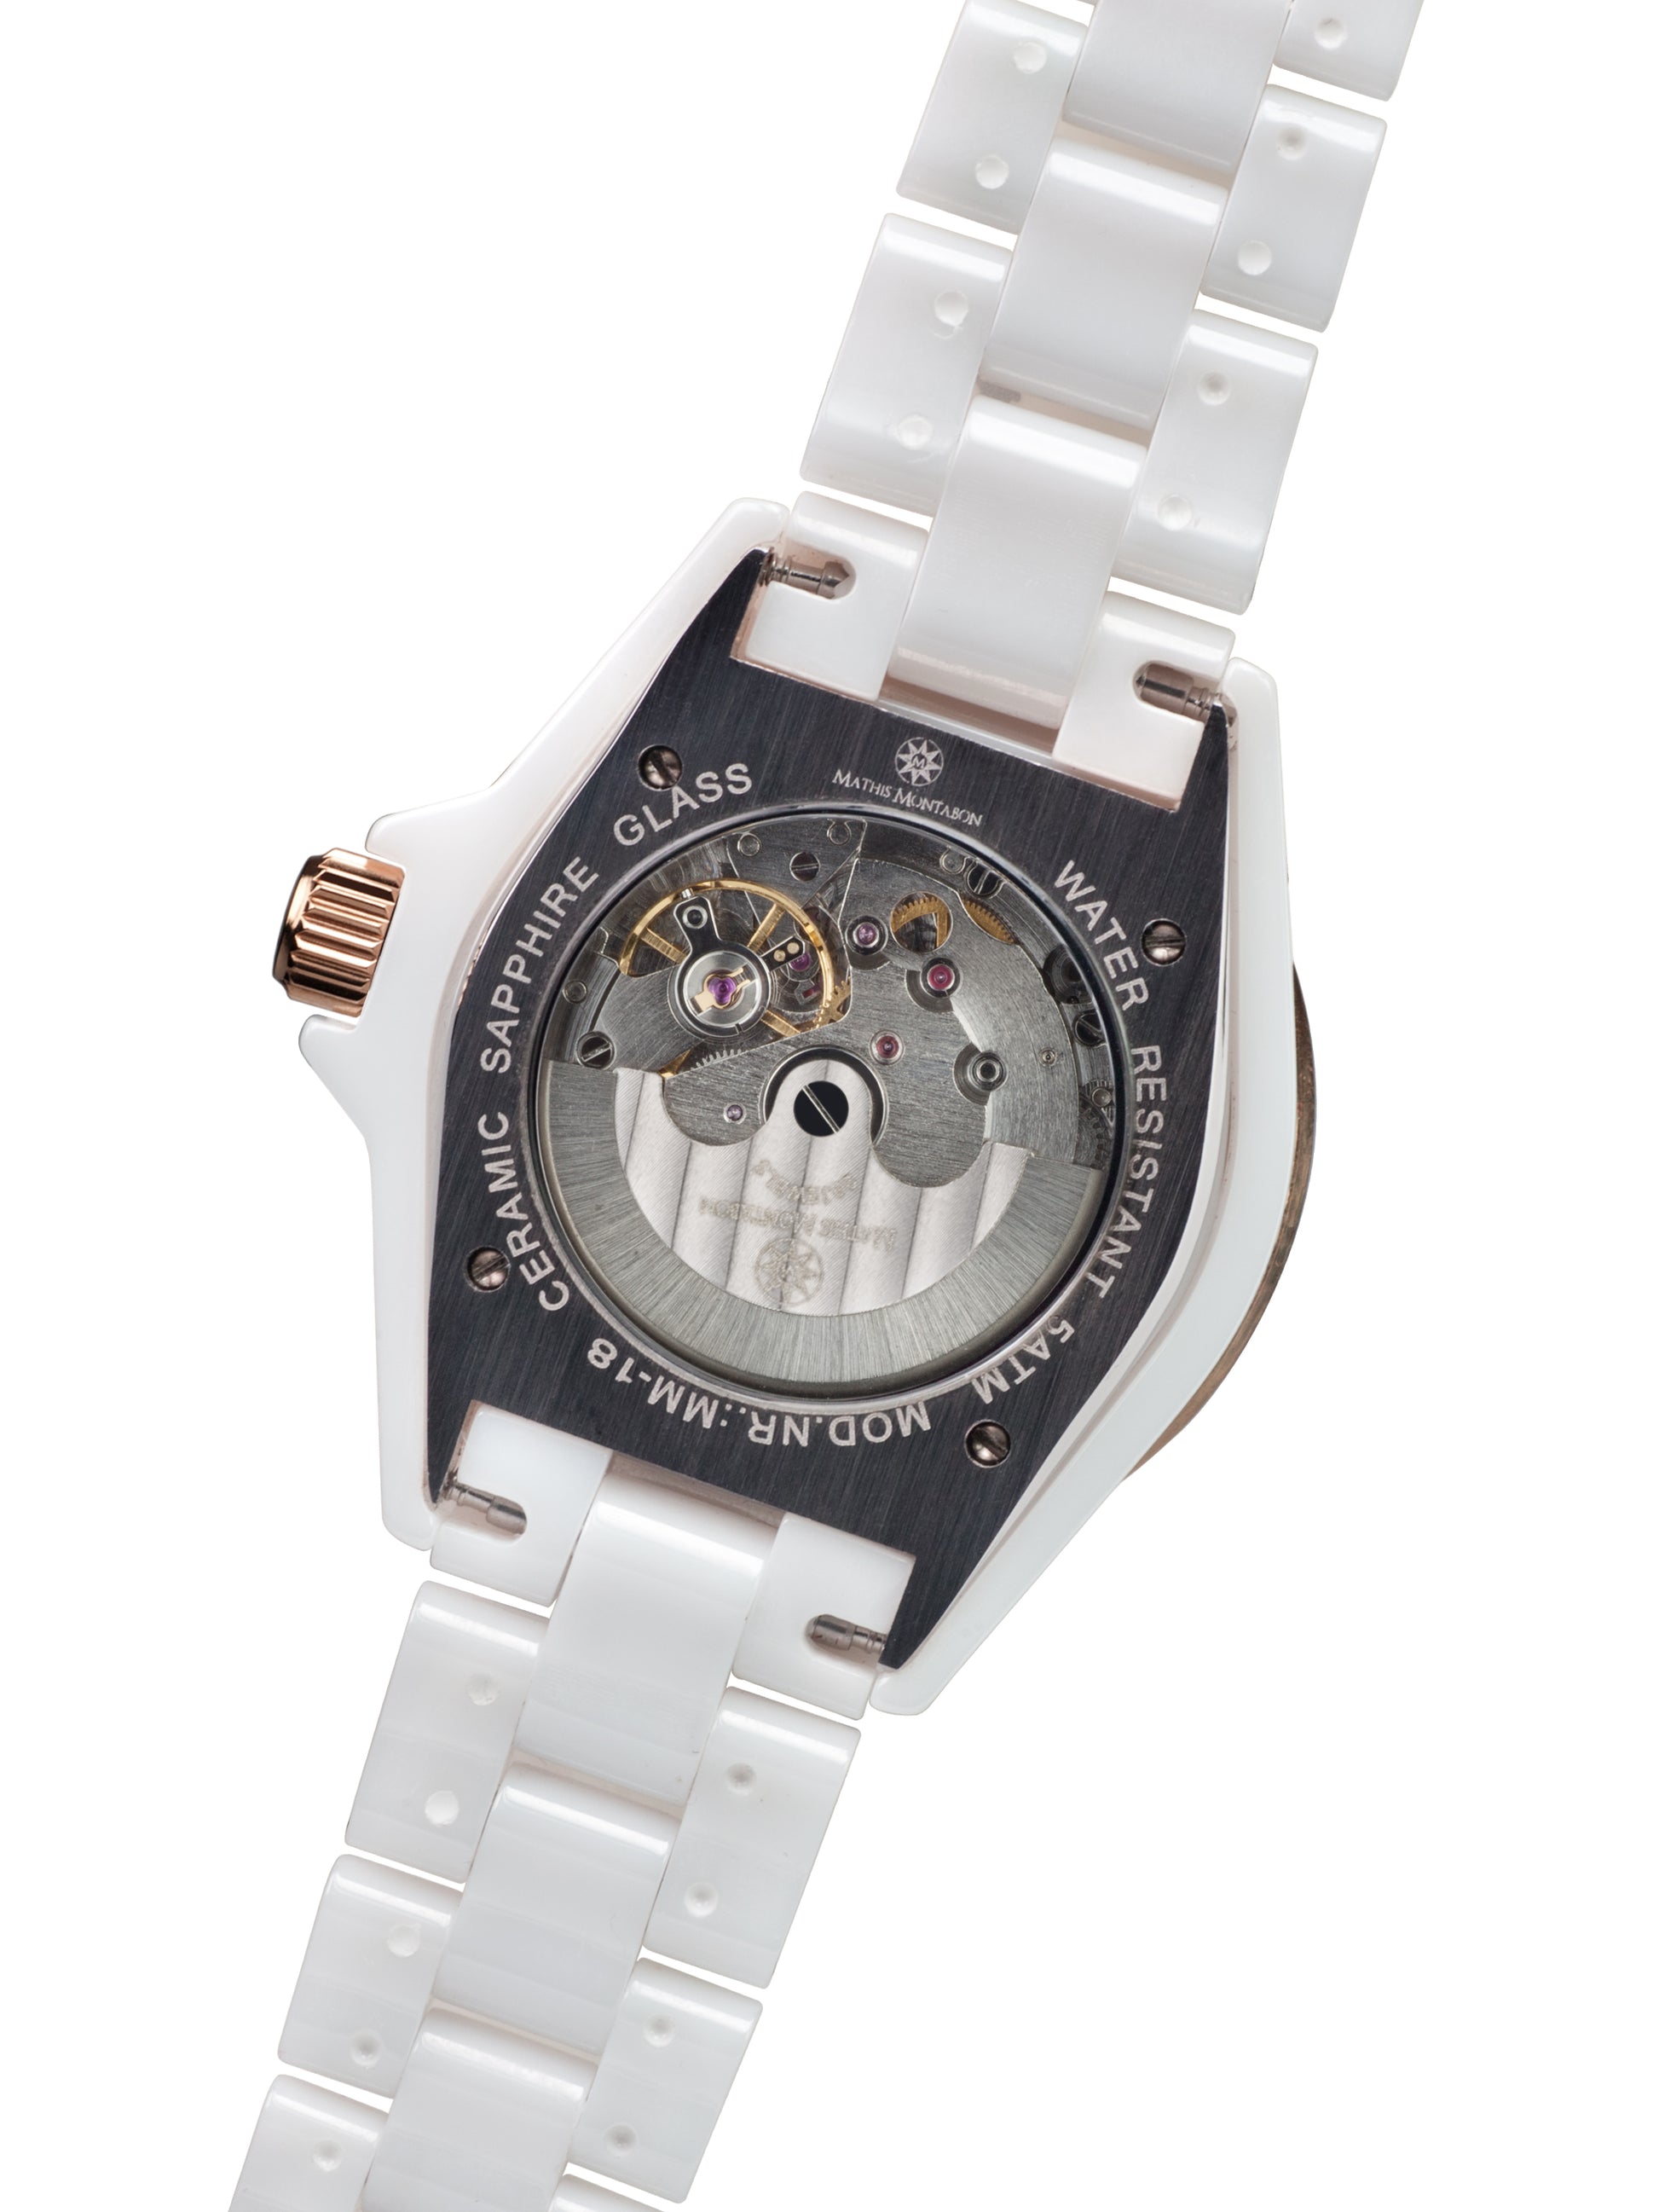 Automatic watches — La Belle — Mathis Montabon — roségold Zirkonia